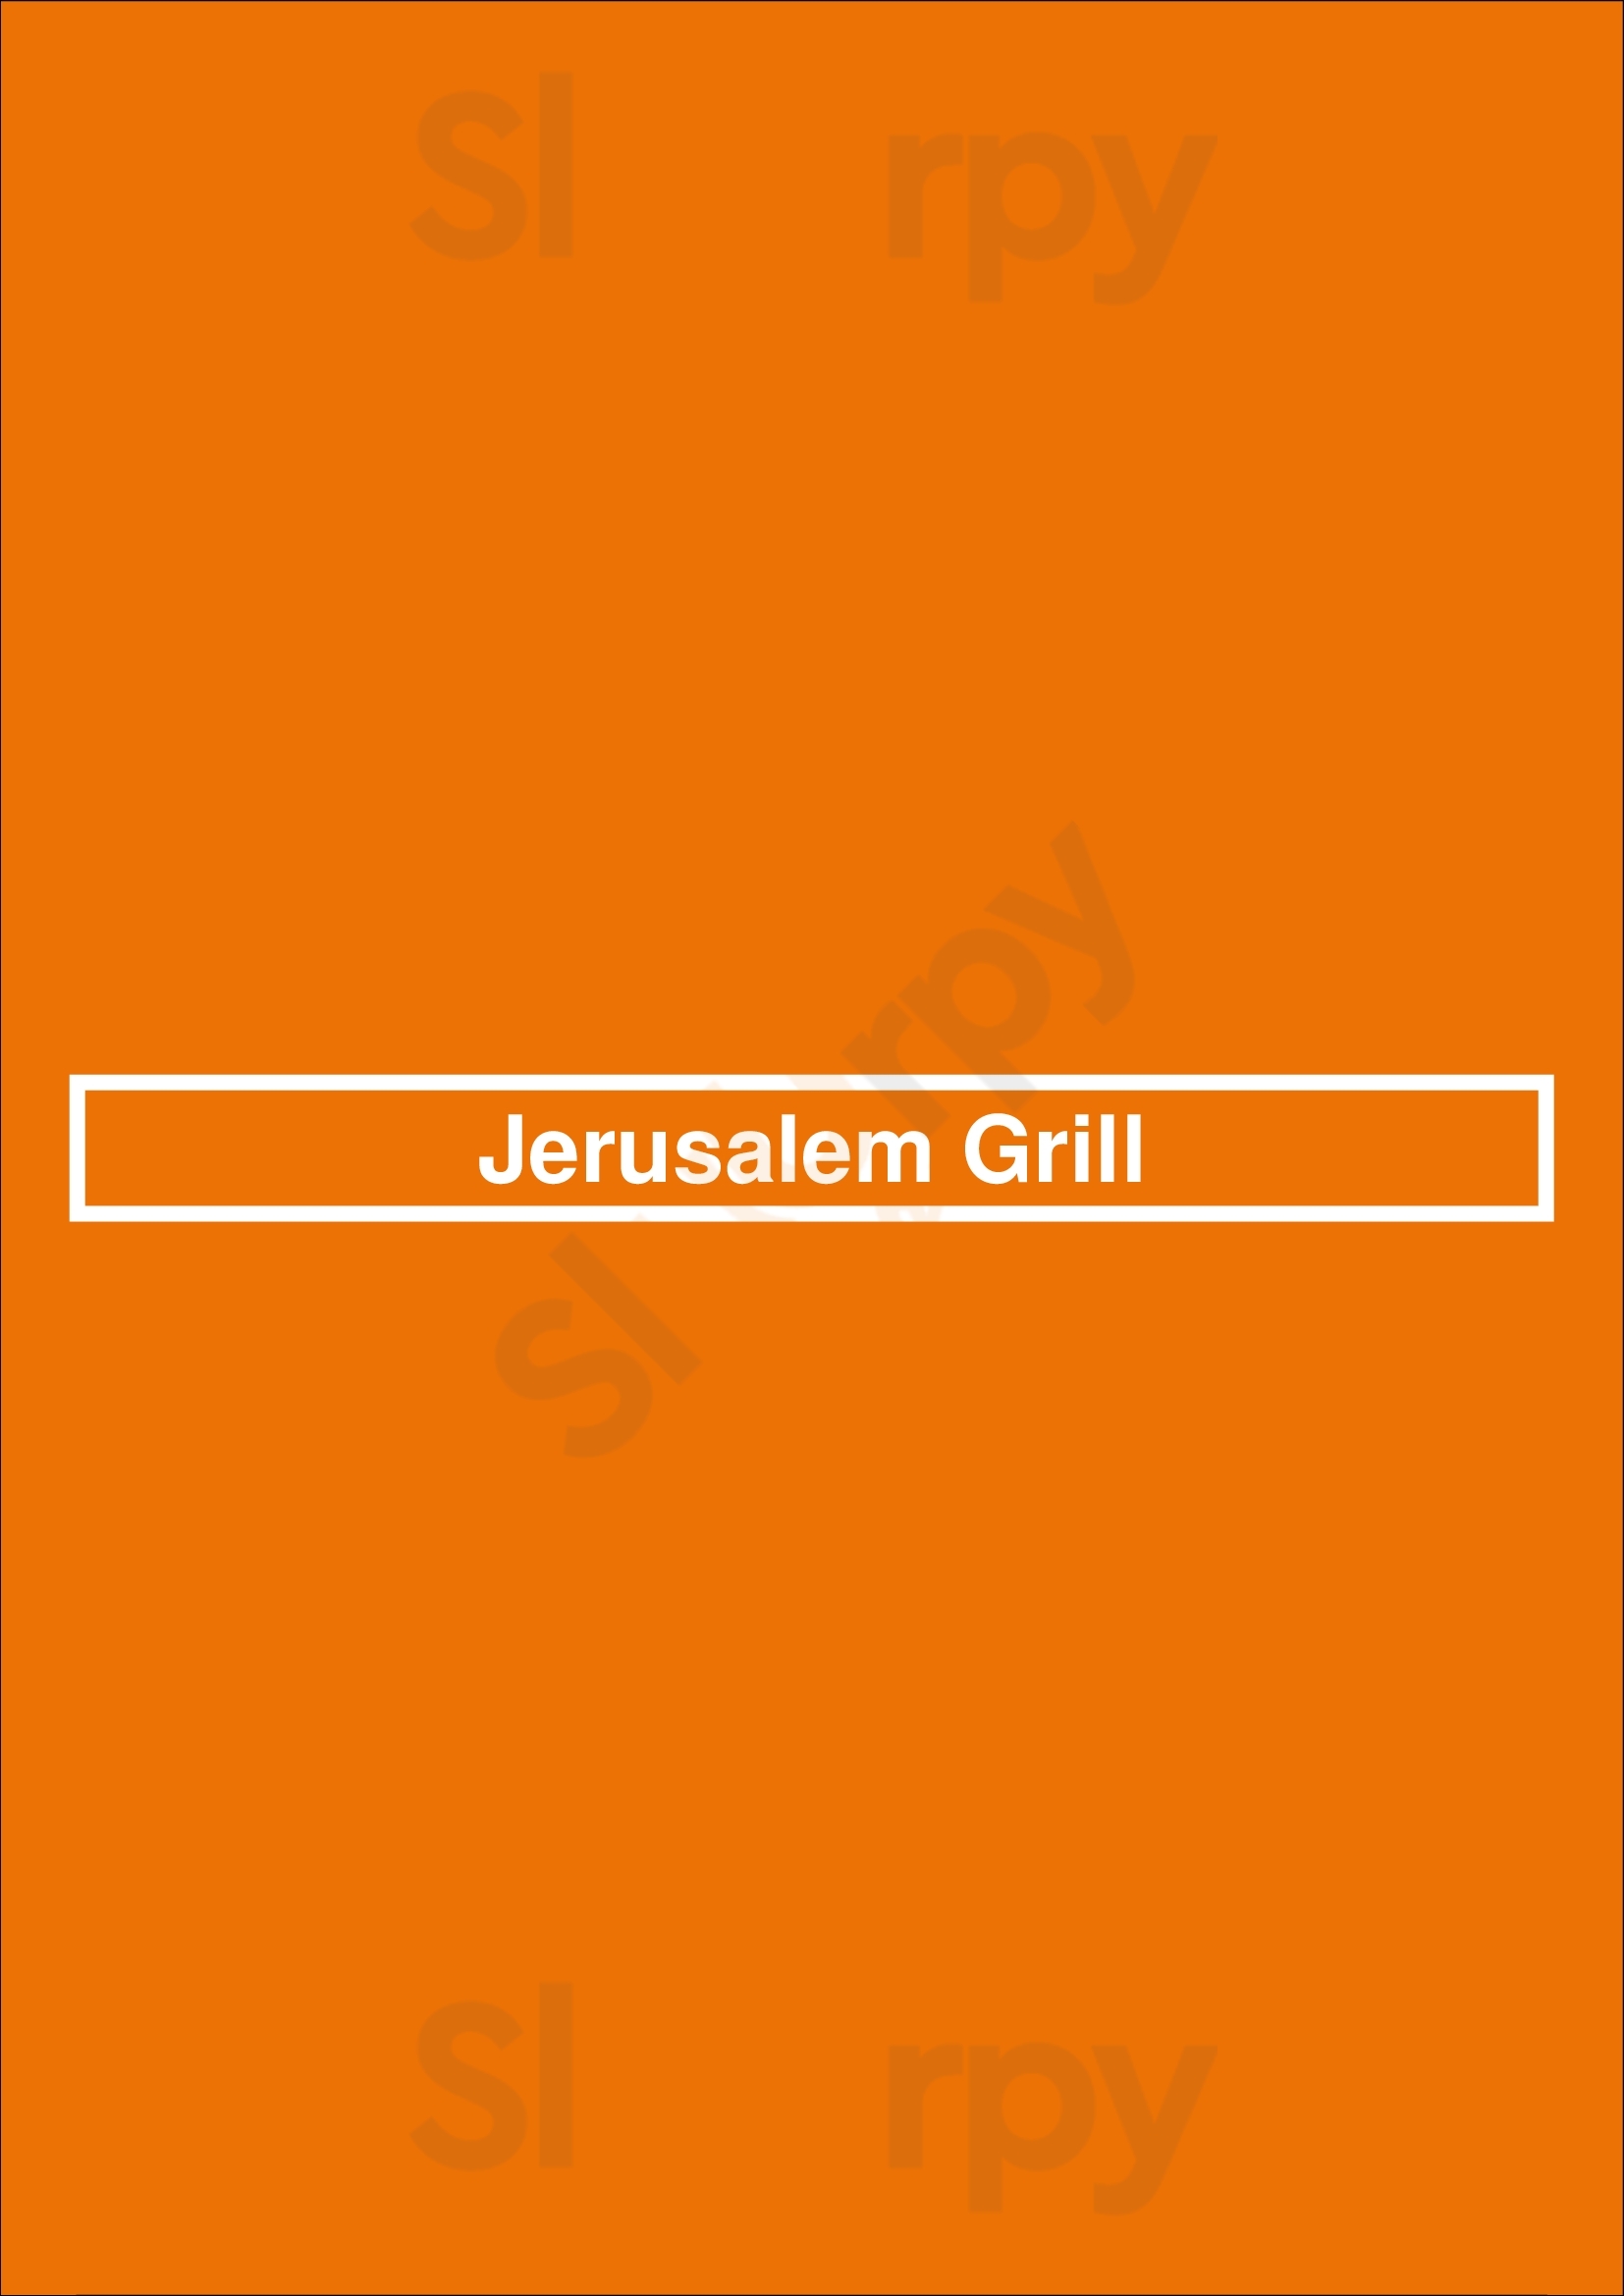 Jerusalem Grill San Antonio Menu - 1